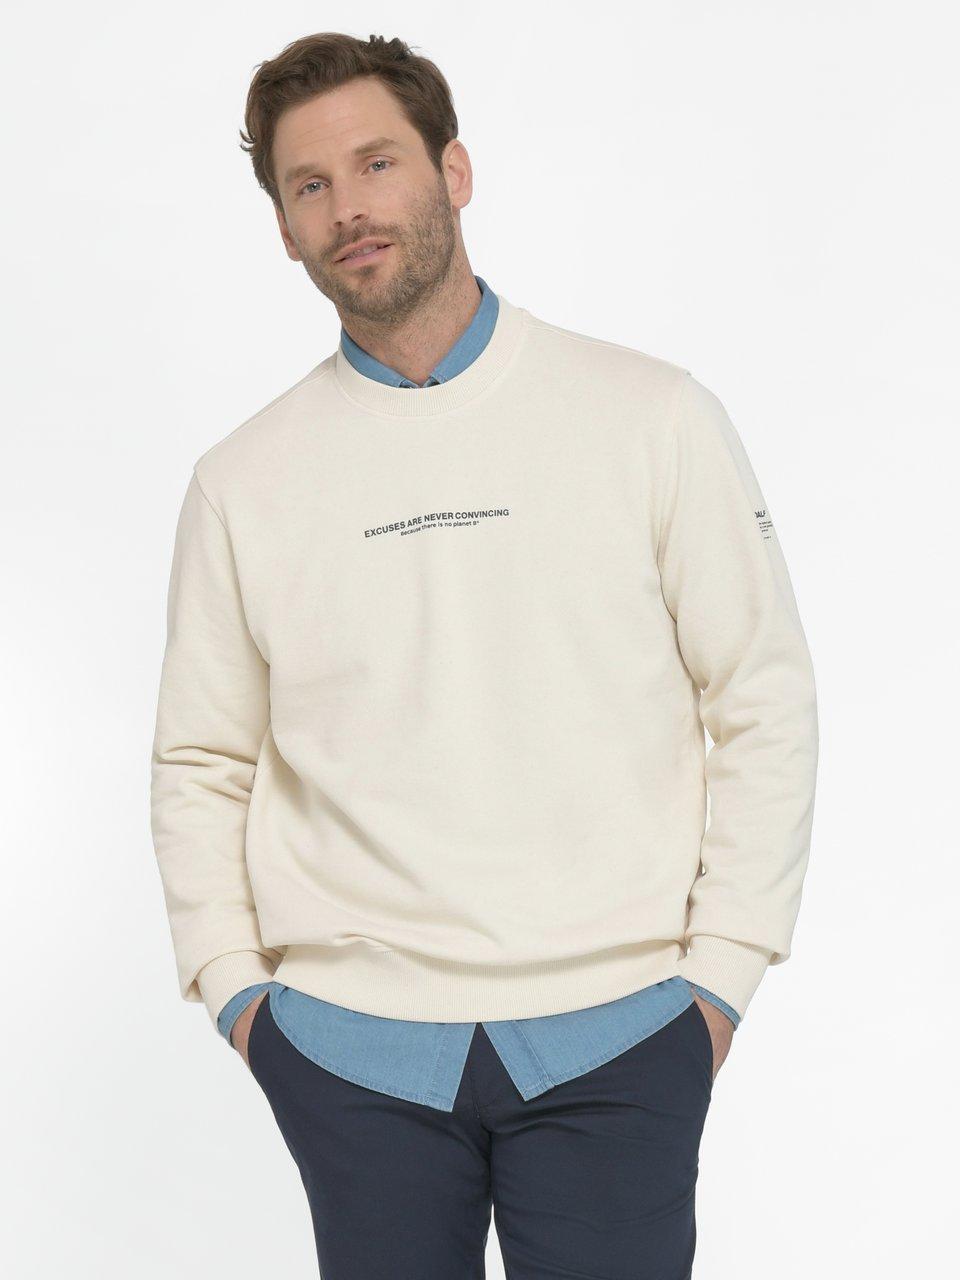 Ecoalf - Sweatshirt